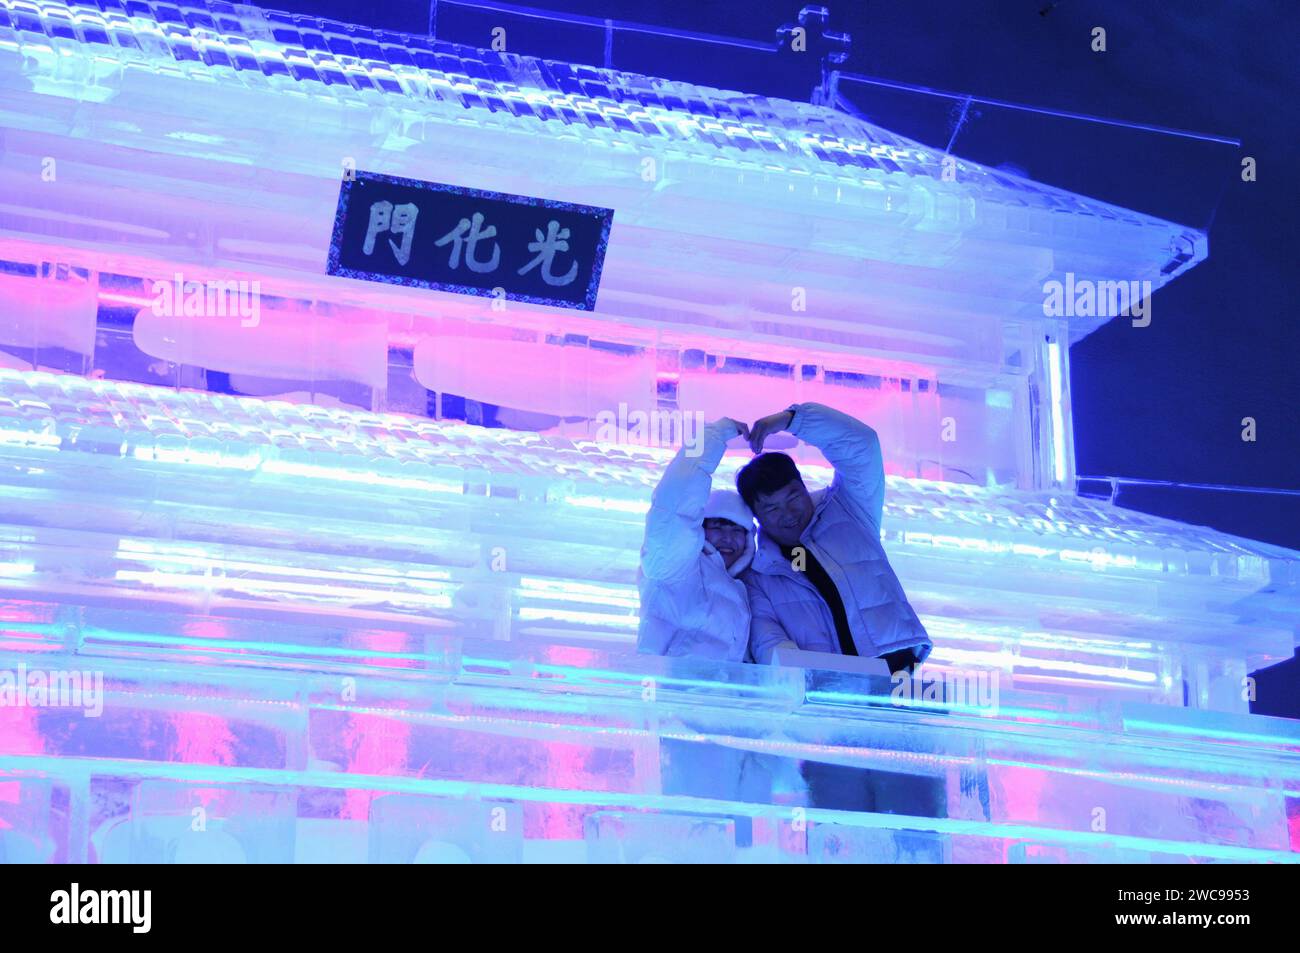 Pékin, Corée du Sud. 13 janvier 2024. Les touristes posent pour des photos devant la sculpture Gwanghwamun réalisée par les sculpteurs de glace Harbin lors du festival de glace Hwacheon Sancheoneo dans la province de Gangwon, Corée du Sud, le 13 janvier 2024. Capitale de la province la plus septentrionale de la Chine, Heilongjiang, Harbin est réputée pour être le « joyau de la glace et de la neige » du pays. Cette année, les sculpteurs de glace de Harbin ont été invités à créer des sculptures de glace pour le festival de glace de Hwacheon Sancheoneo, l'un des festivals d'hiver sud-coréens les plus populaires. Crédit : Yang Chang/Xinhua/Alamy Live News Banque D'Images